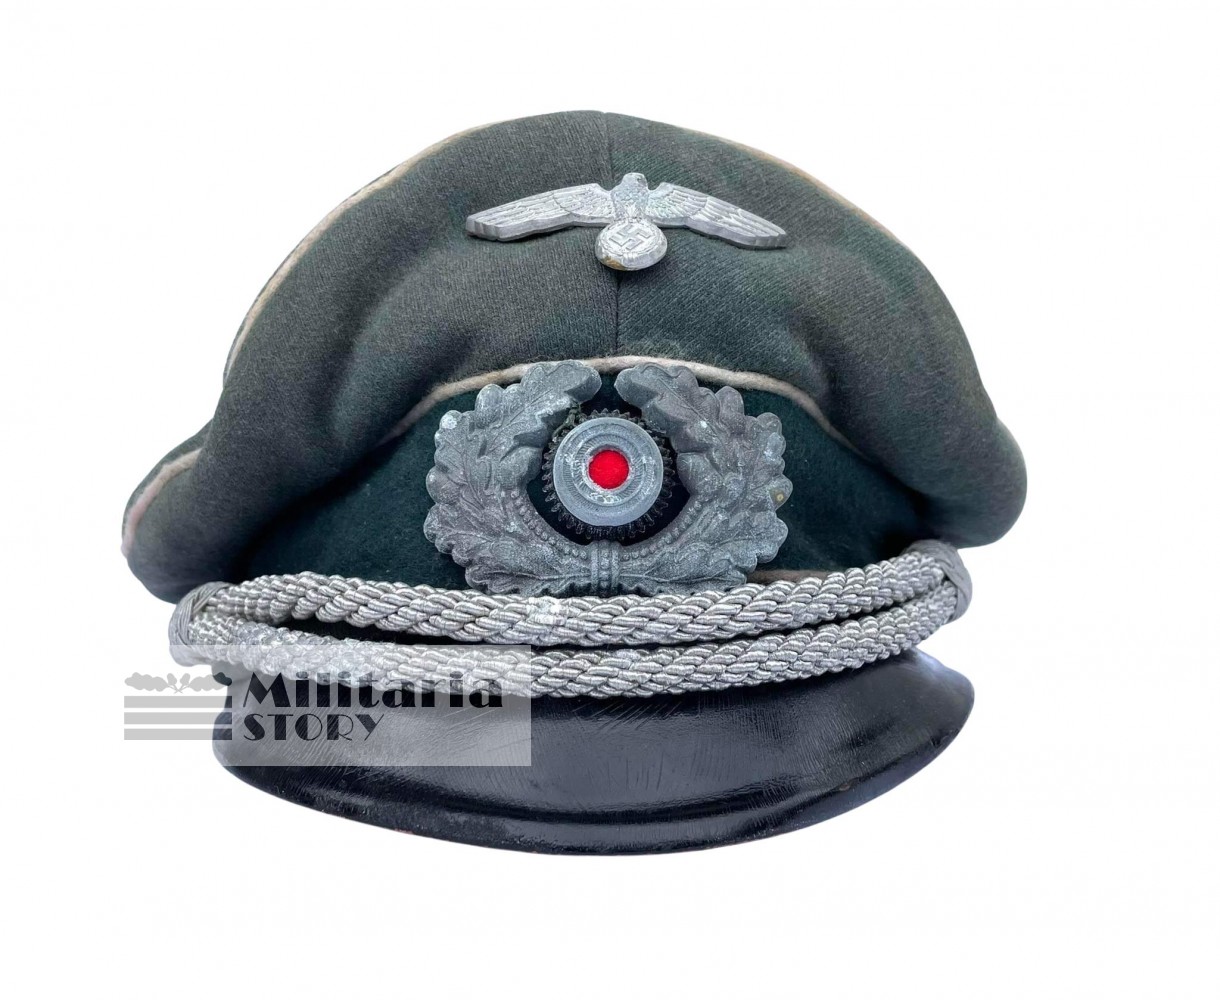 Heer Officer "Crusher" style visor cap